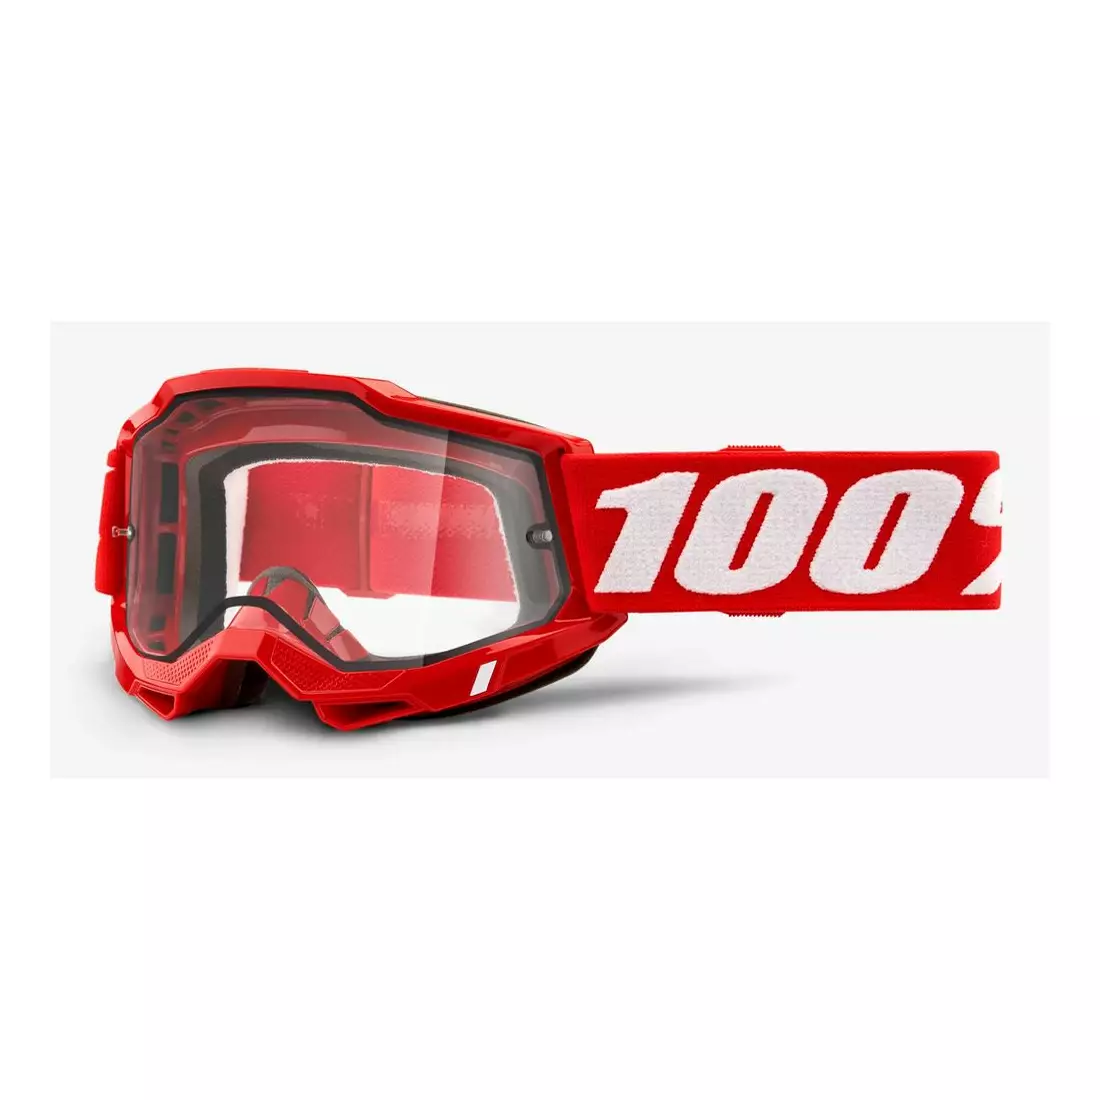 100% ochelari de protecție pentru biciclete  ACCURI 2 ENDURO MOTO RED (Geamuri duble transparente) 1STO-50221-501-03